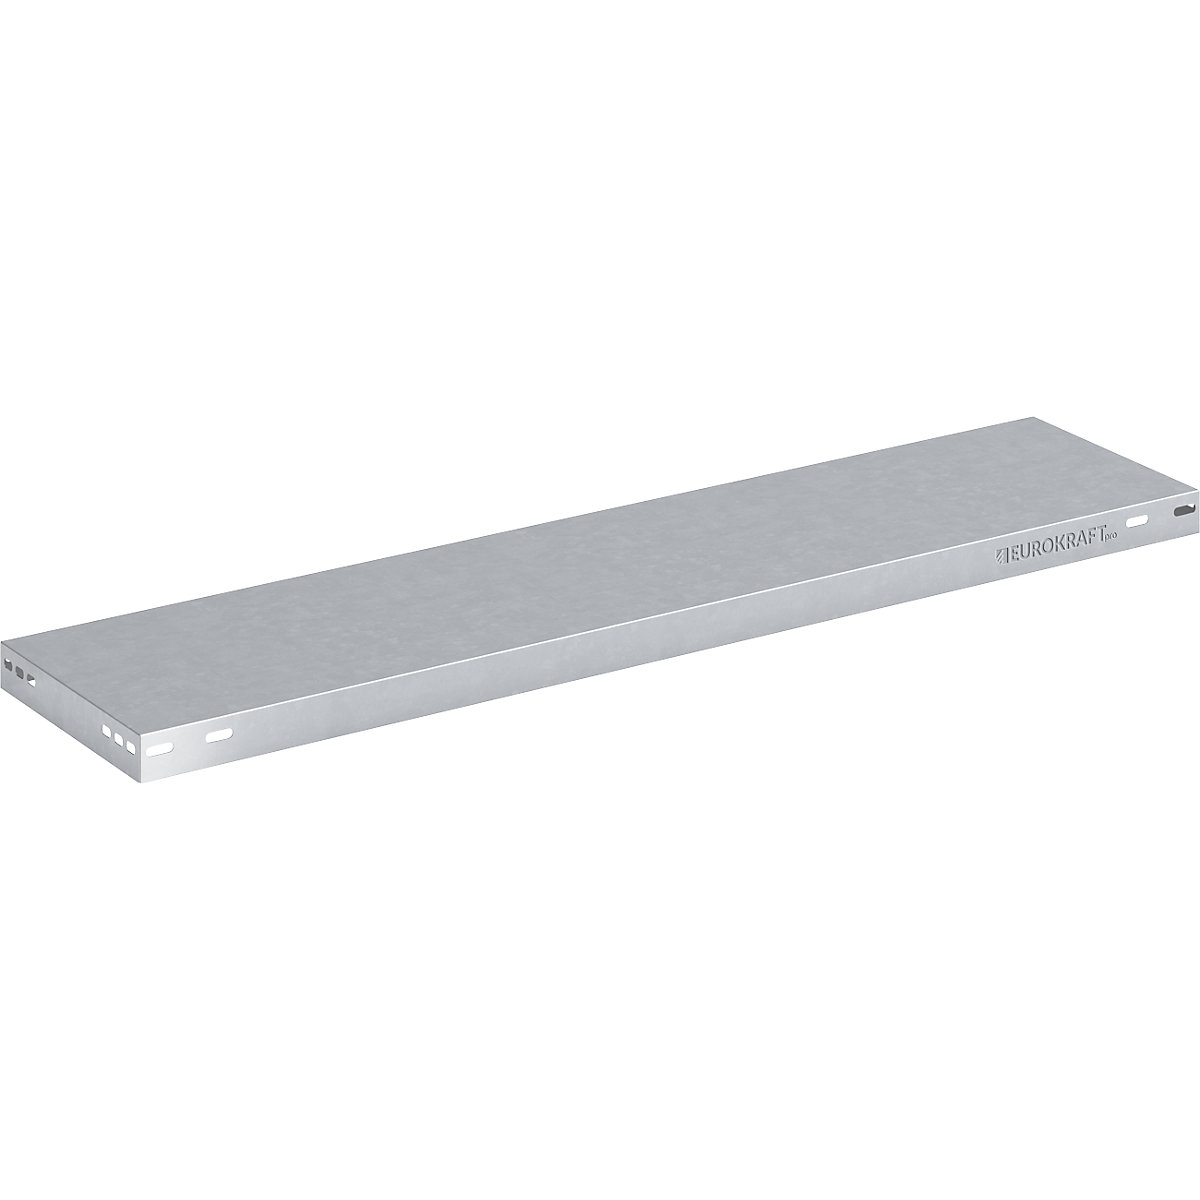 Shelf for boltless storage shelving, width 1000 mm – eurokraft pro